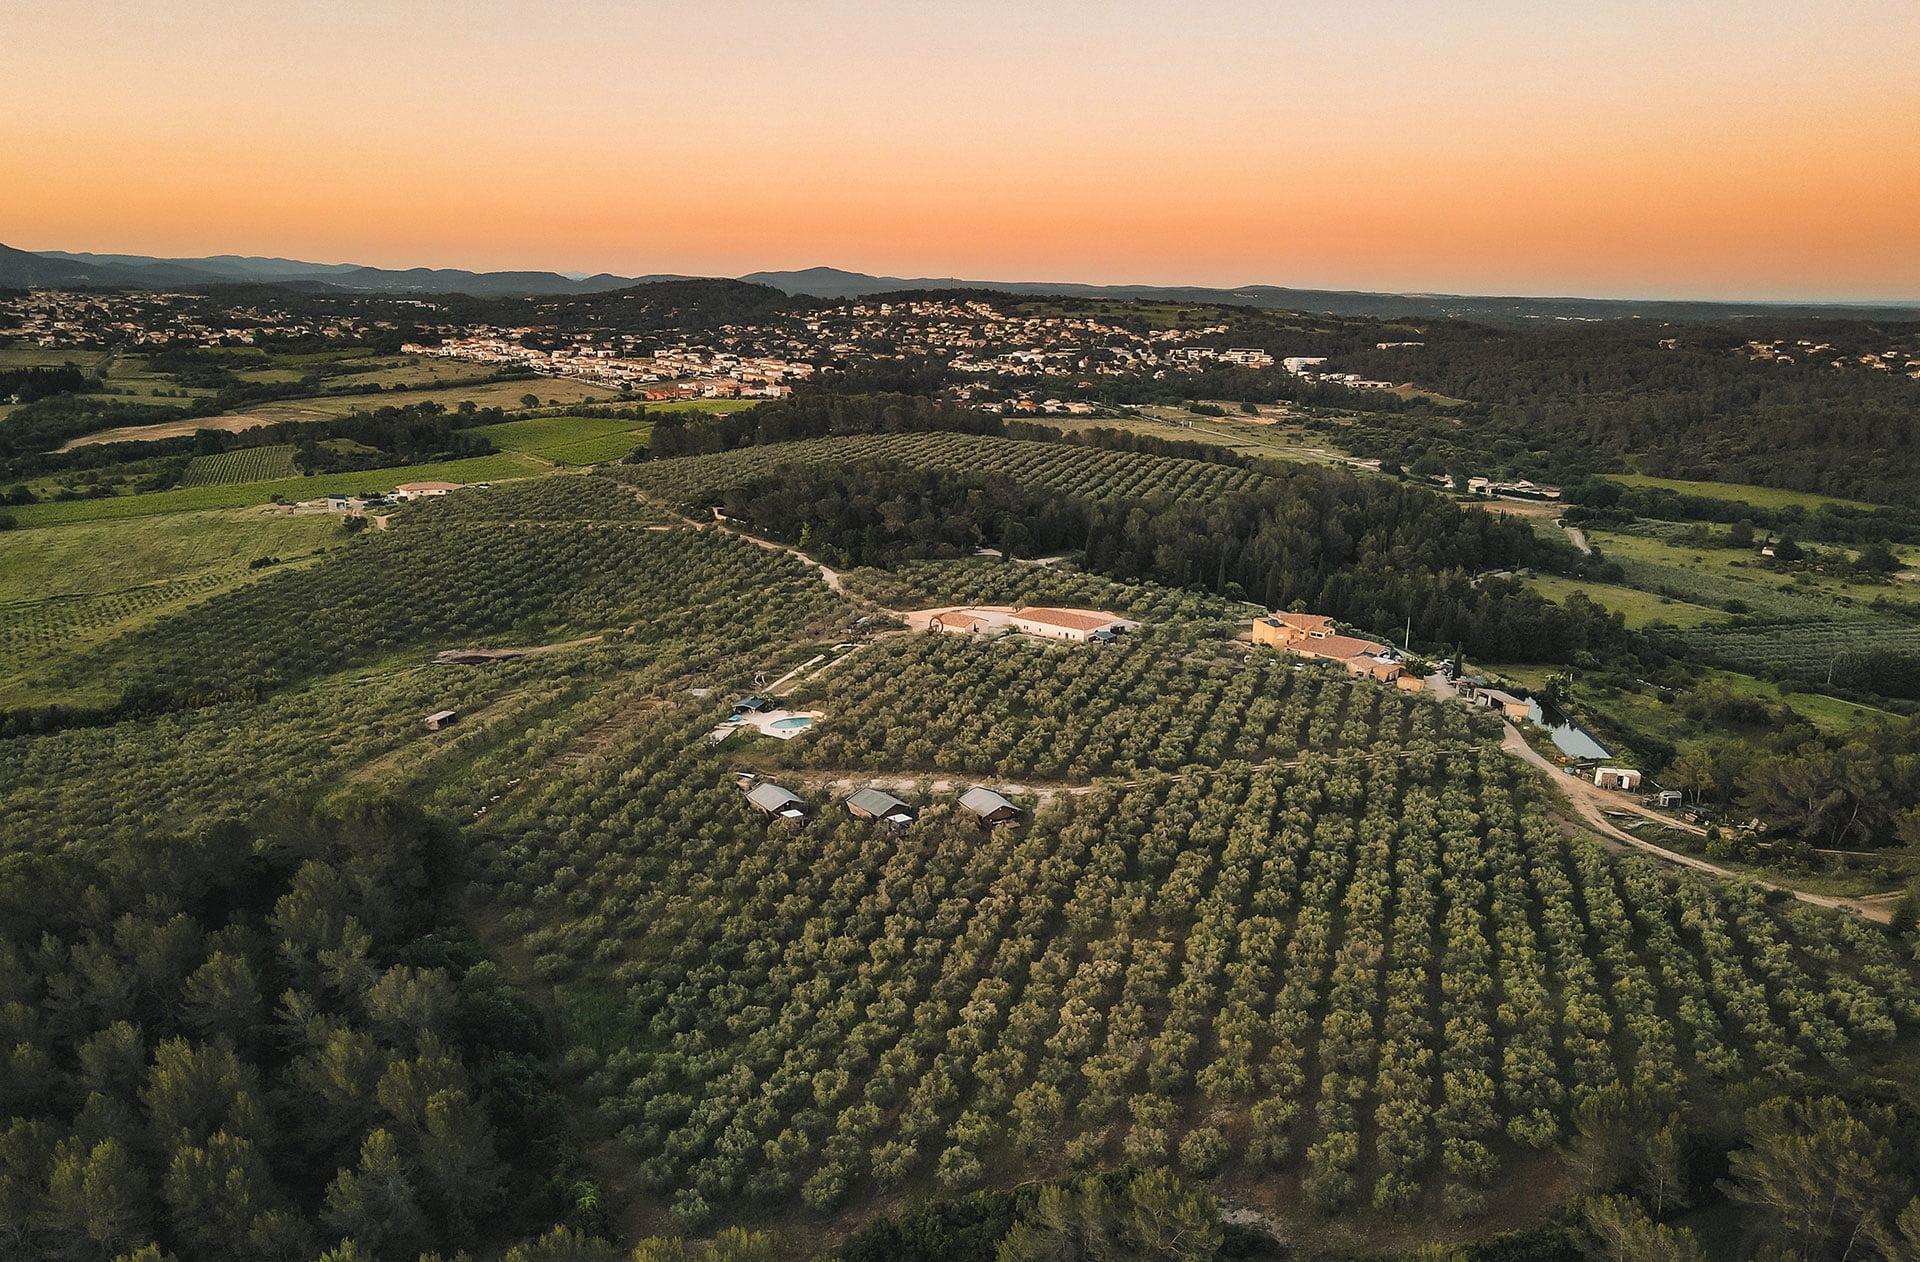 Huile d'olive Picholine du Domaine L'Oulivie. Huile fruitée intense